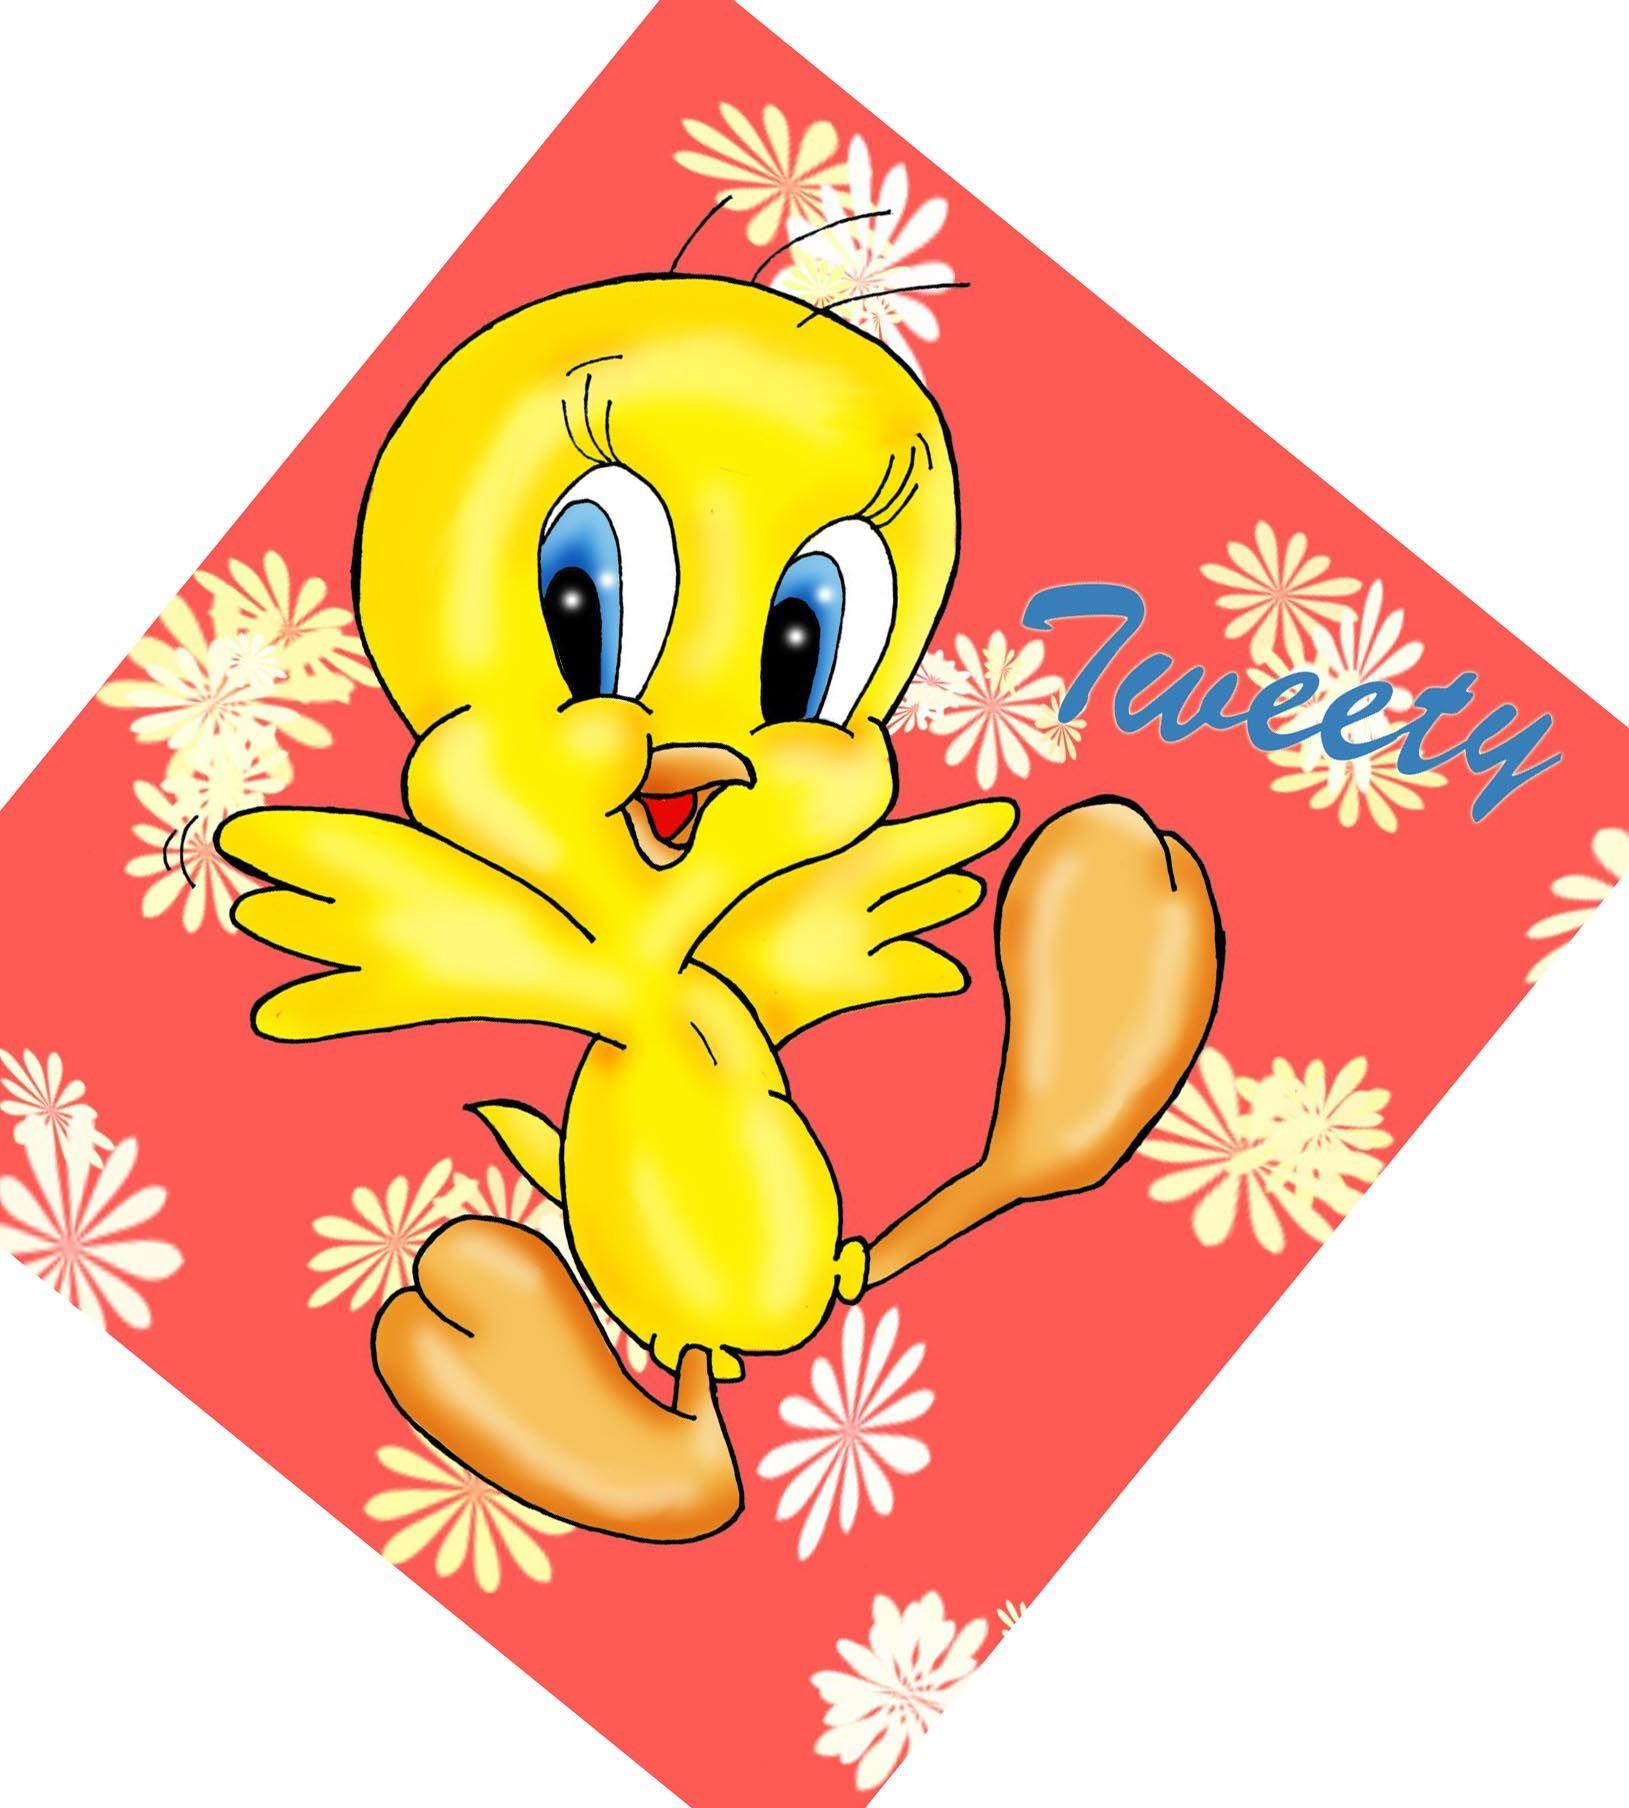 Tweety Bird Wallpaper. Tweety bird wallpaper:. donald duck